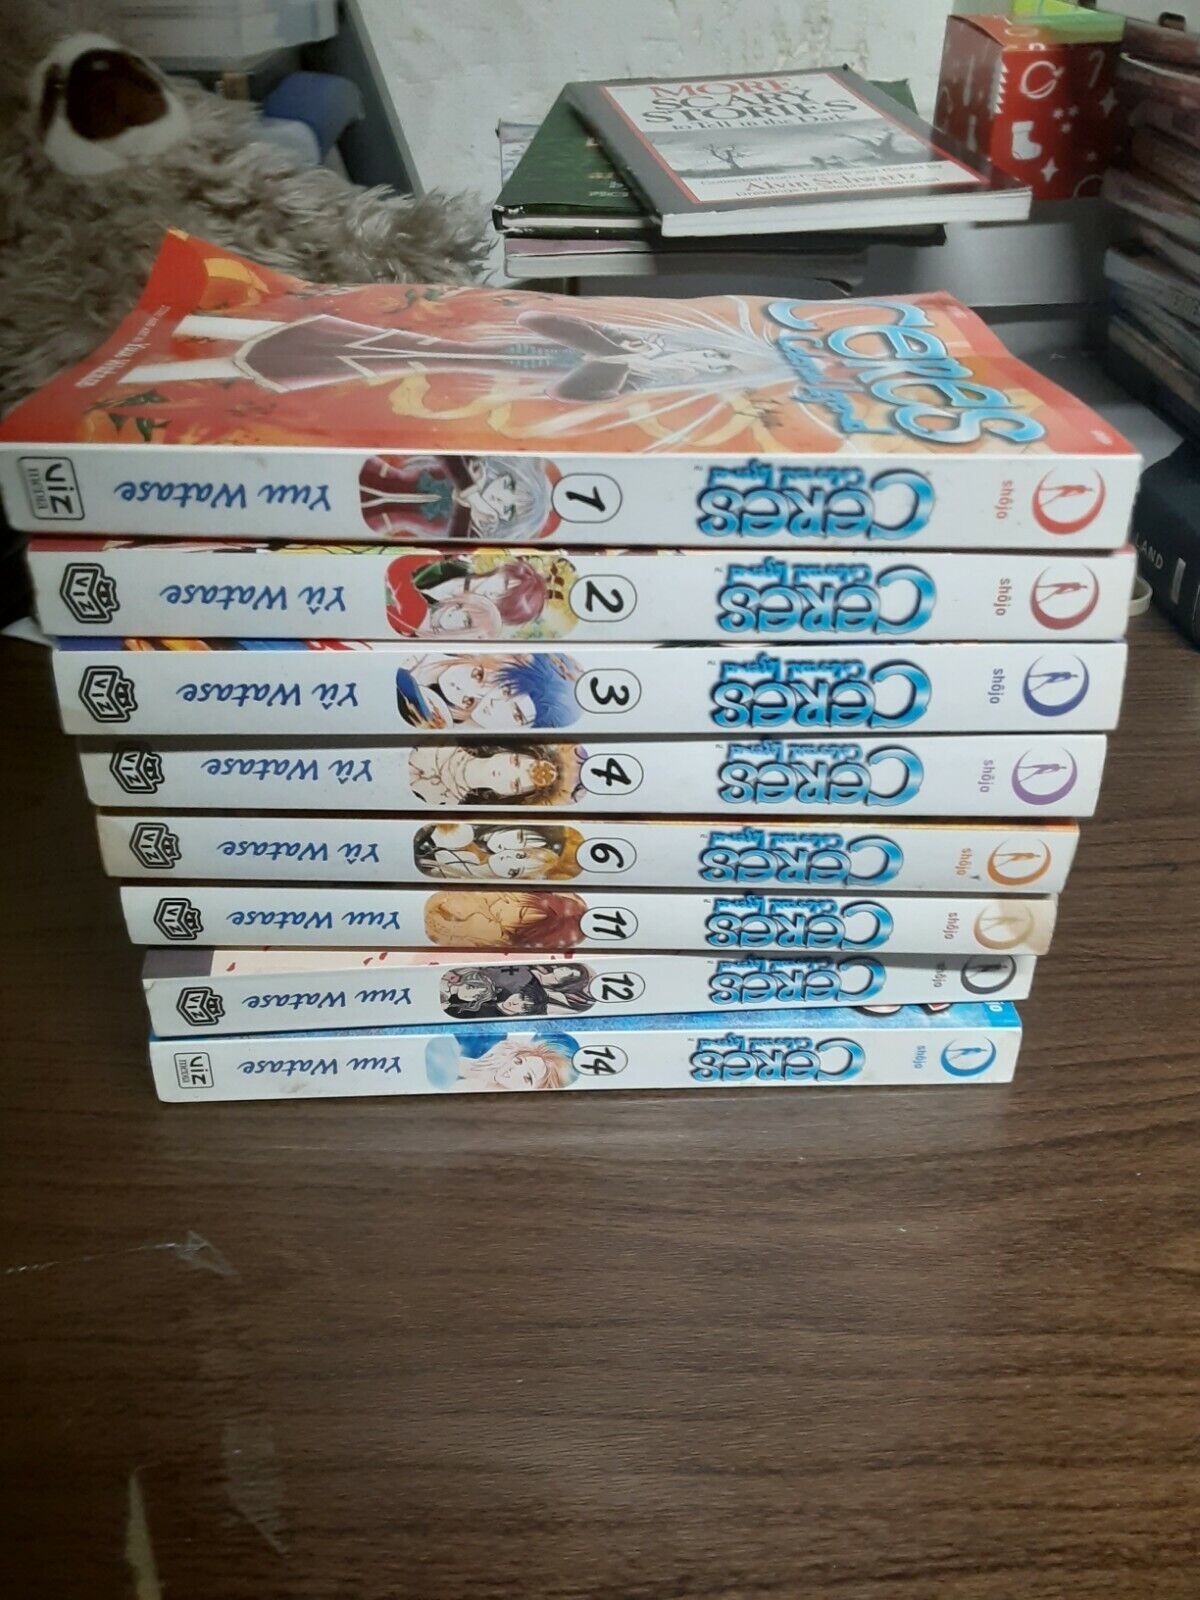 Ceres Celestial Legend Manga Series Vol 1-4, 6, 11, 12 and 14